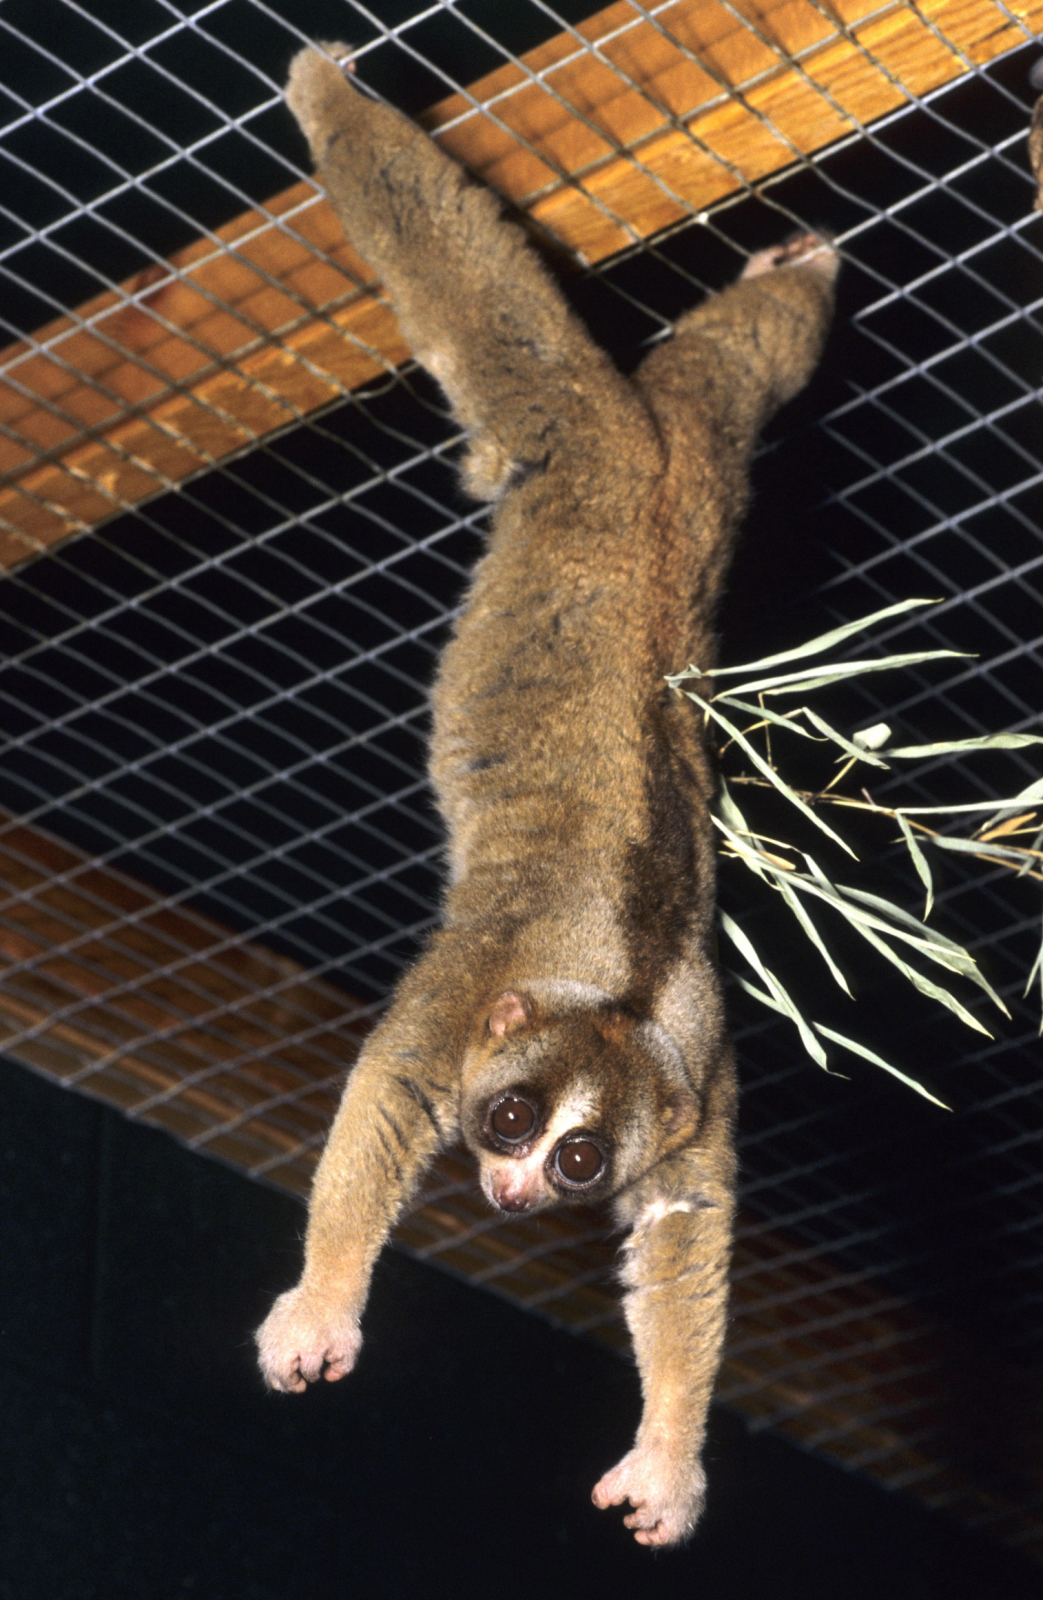 image - David Haring / Duke Lemur Center